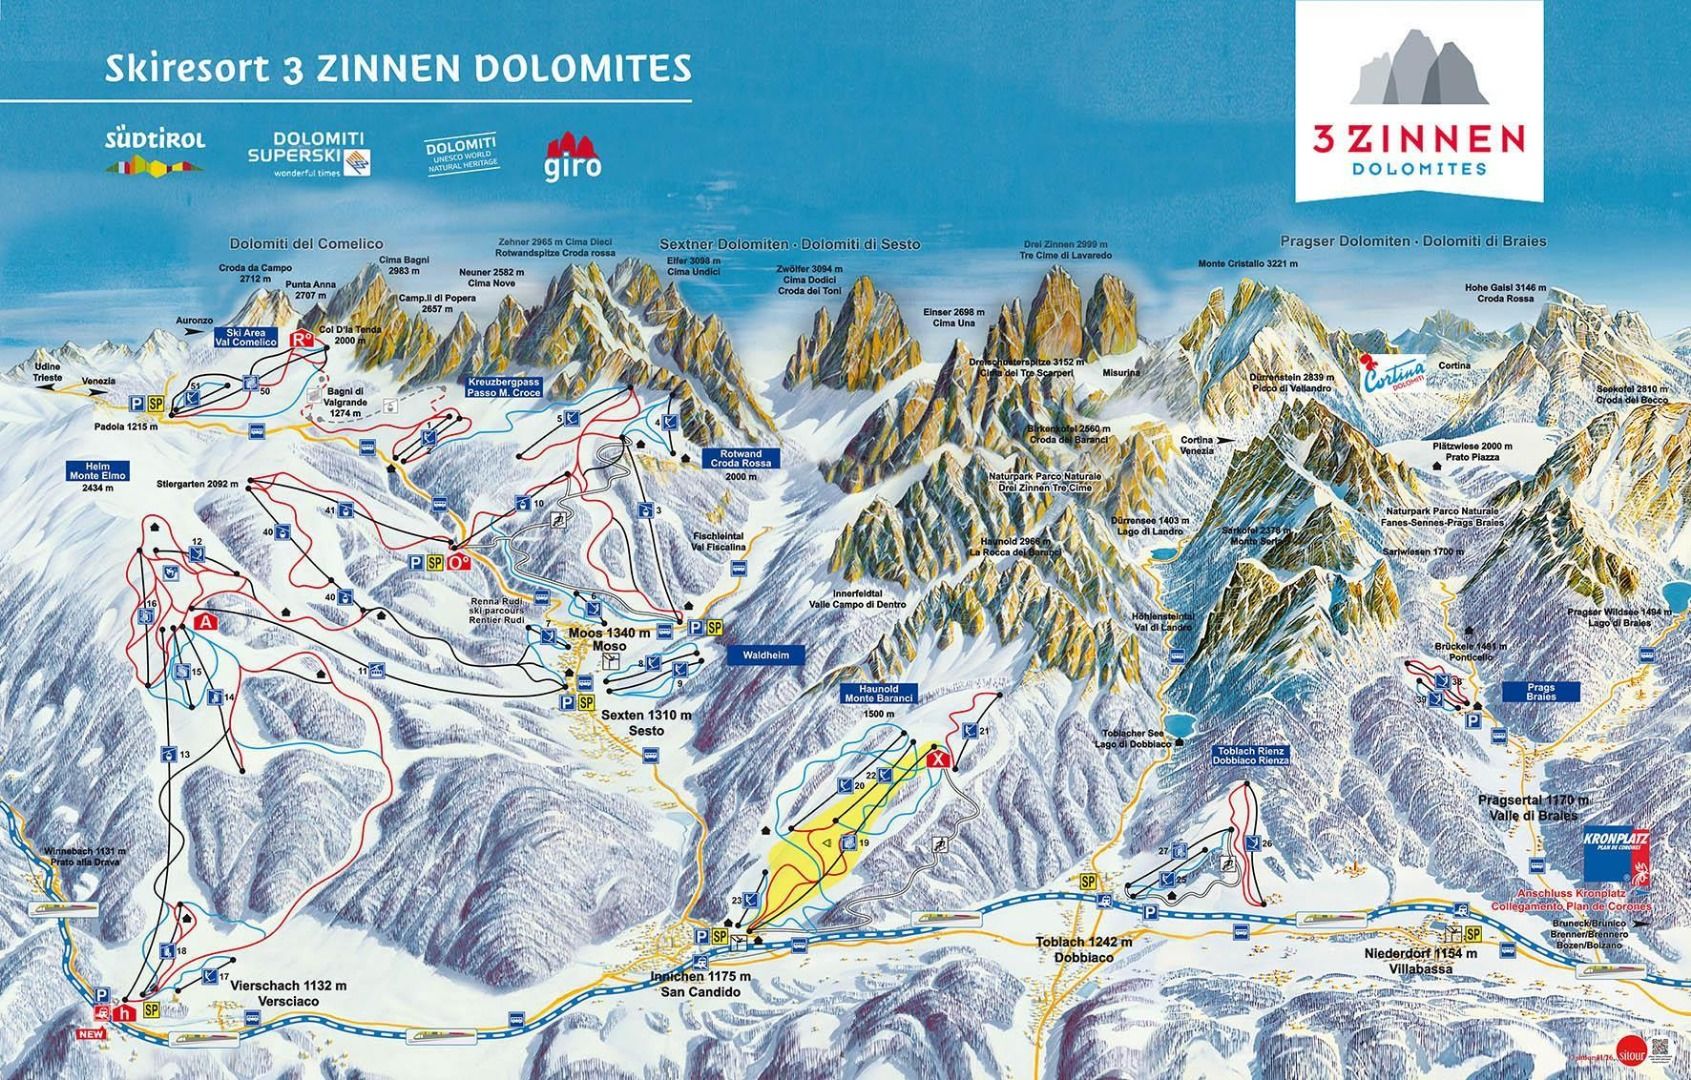 Das Skigebiet 3 Zinnen Dolomites